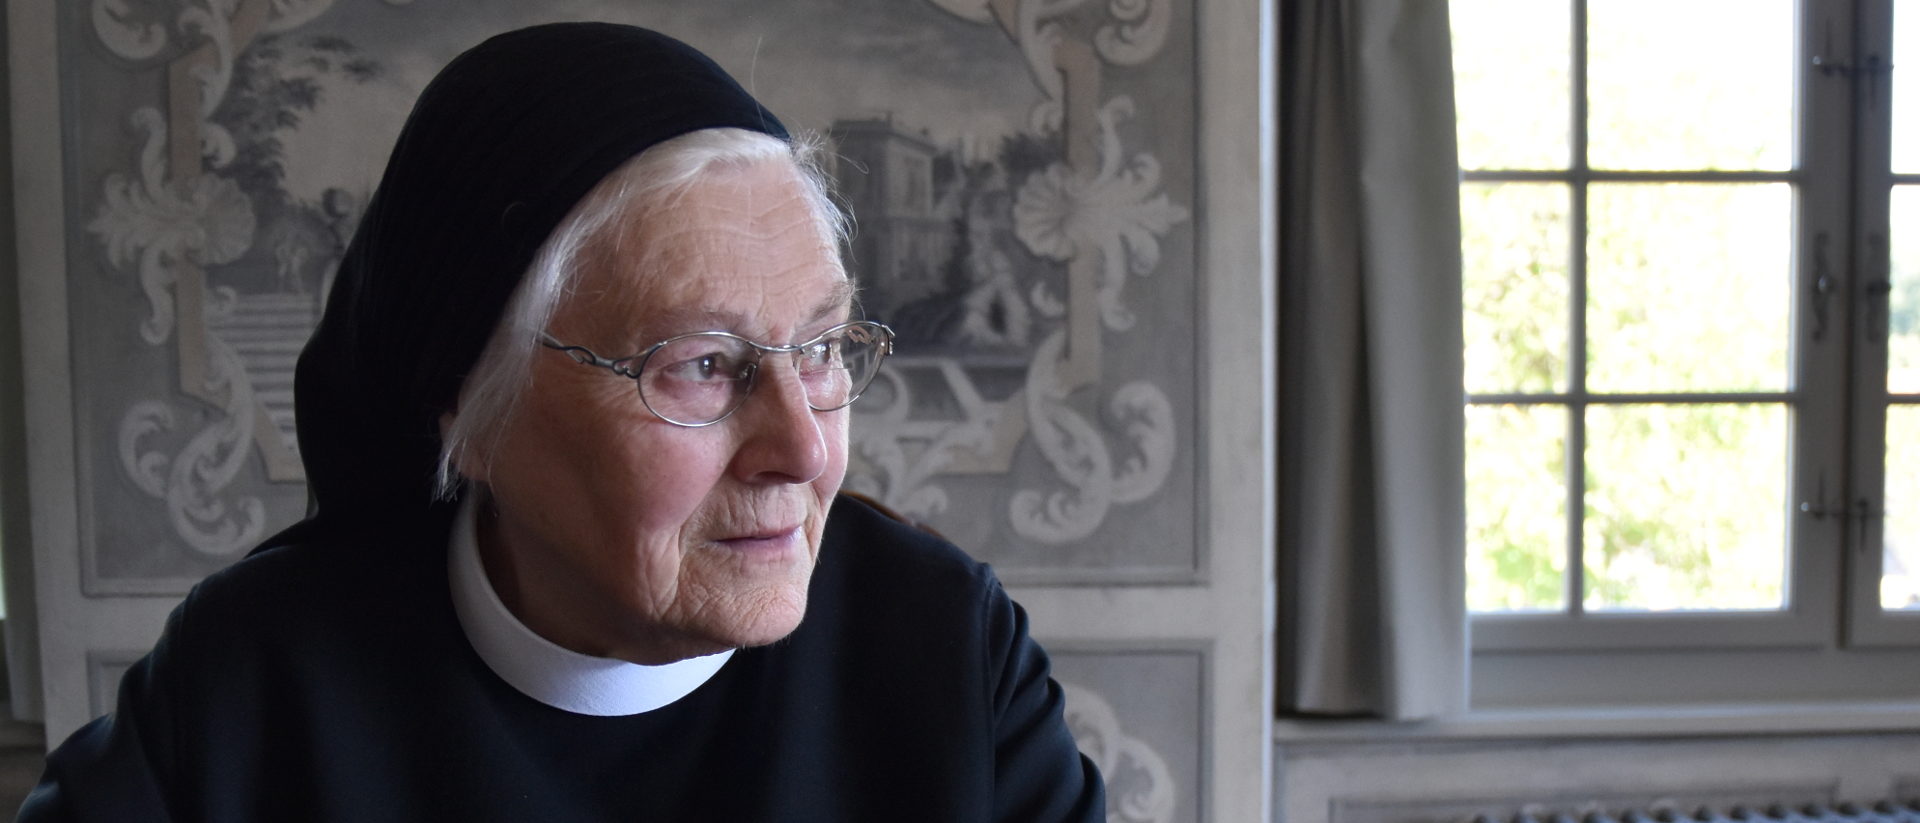 Schwester Andrea Felder: "Ich gehe nicht nach Rom, um zu demonstrieren."